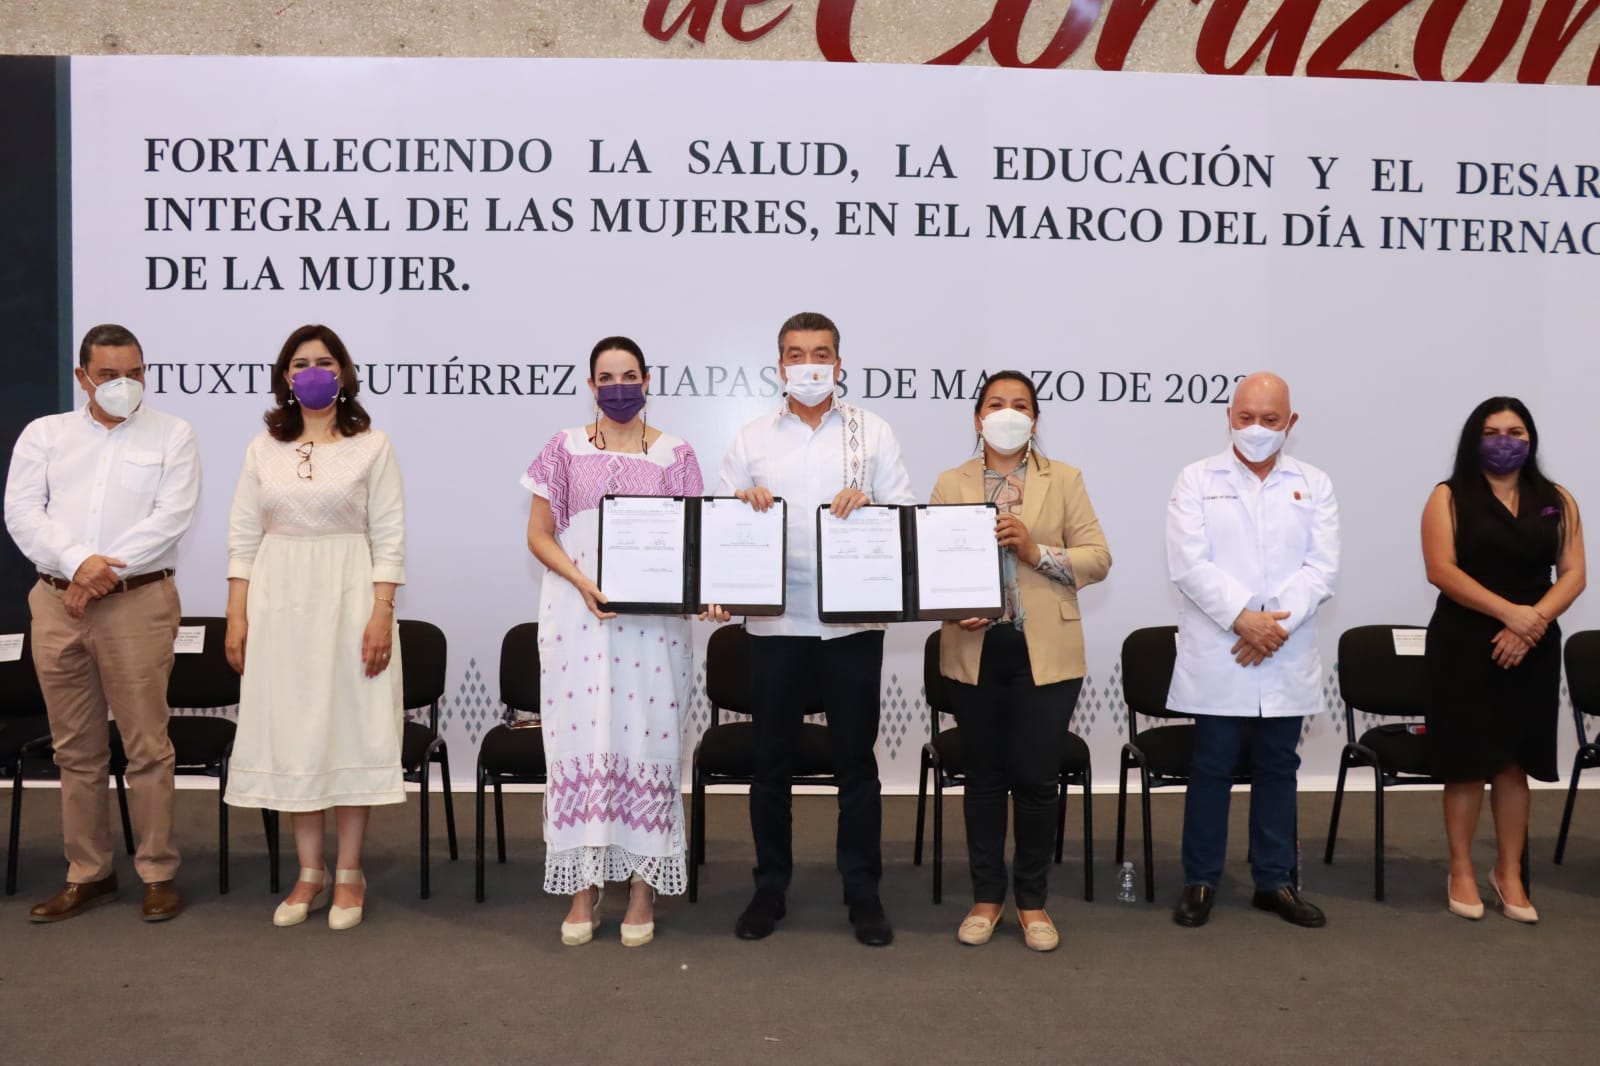 En el Día Internacional de la Mujer, Gobierno de Chiapas firma convenios para fortalecer la salud, educación y desarrollo integral.jpg